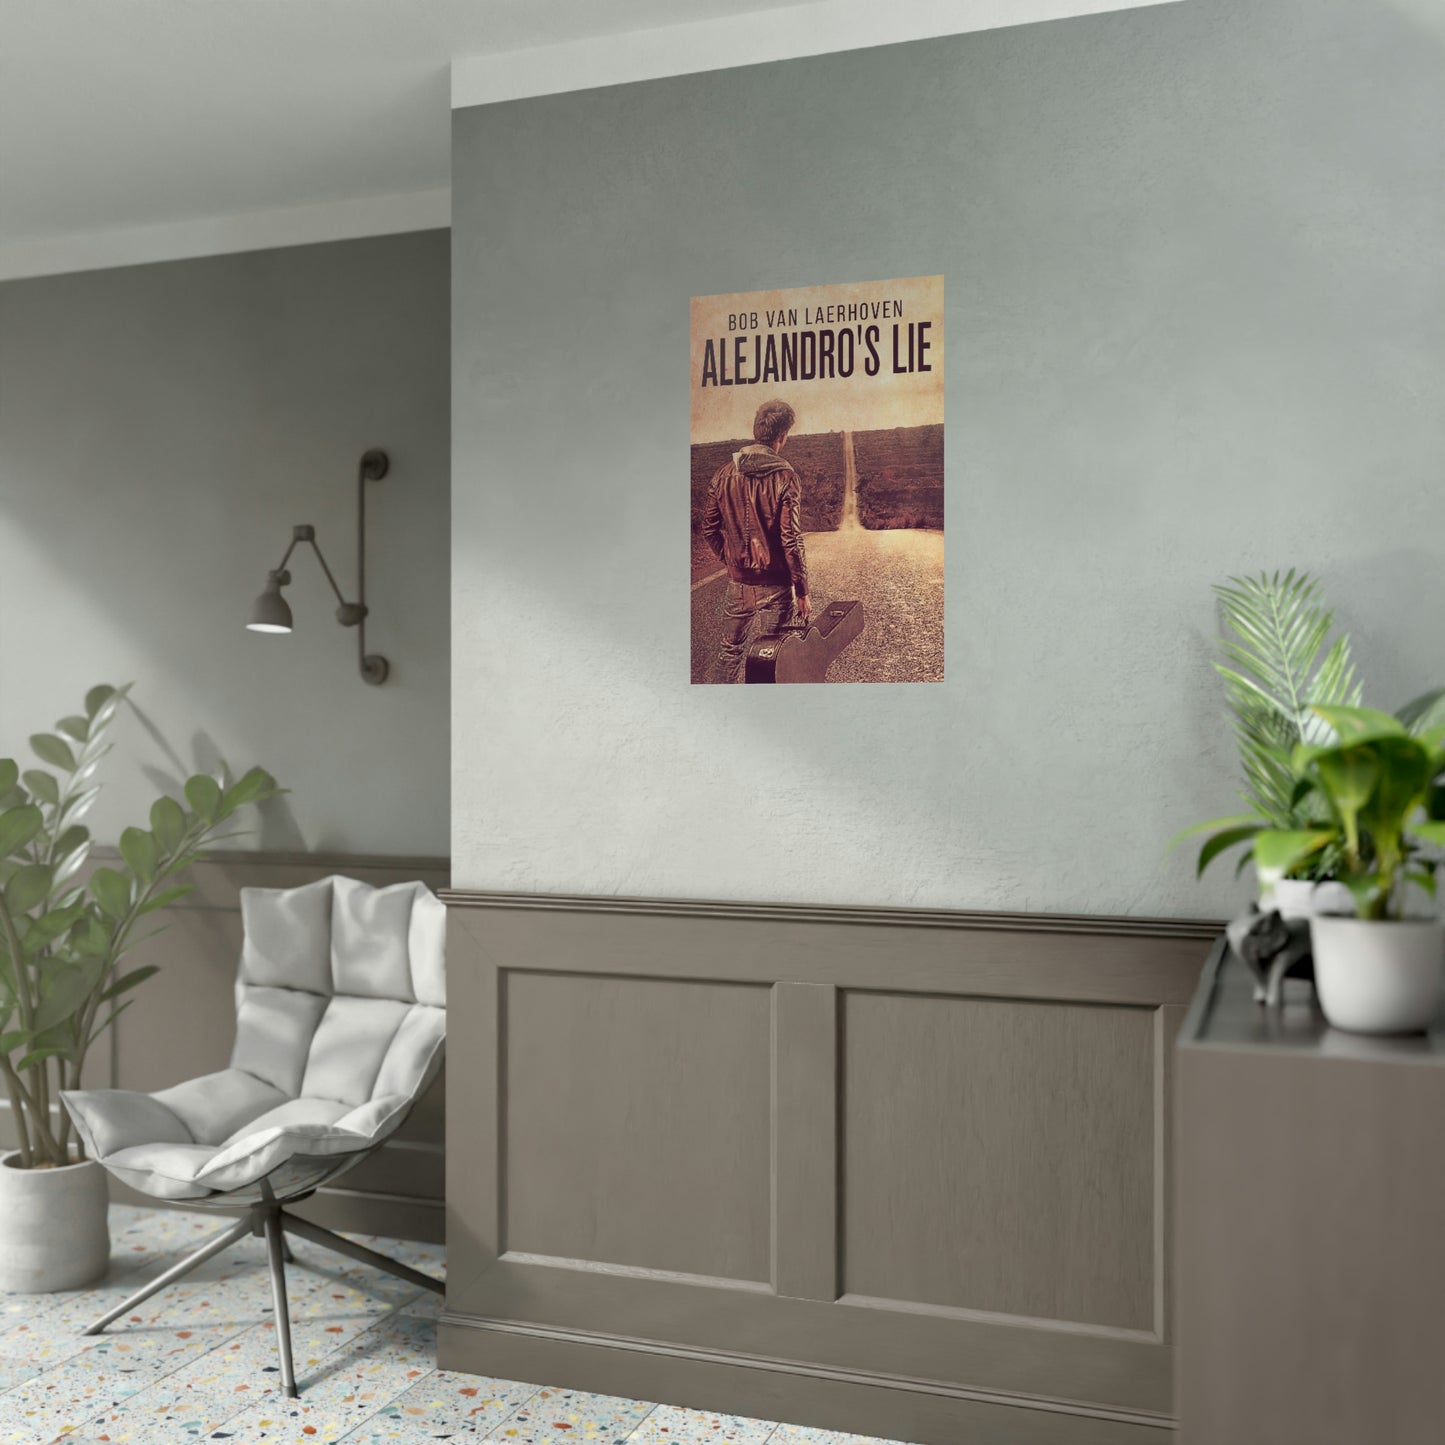 Alejandro's Lie - Rolled Poster